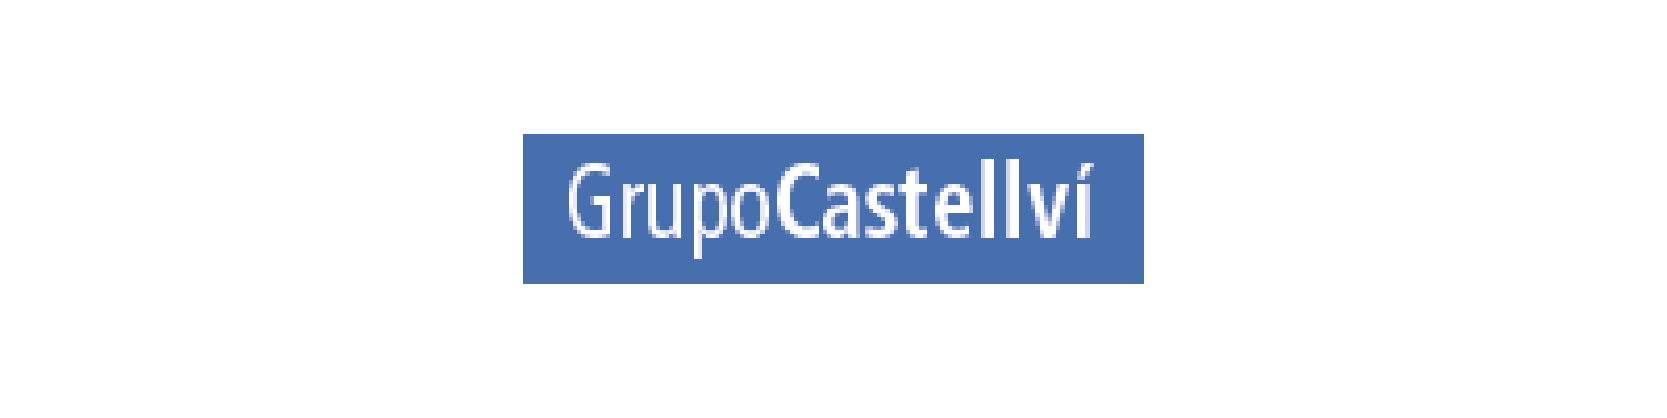 roi-real-estate-grupo-castellvi